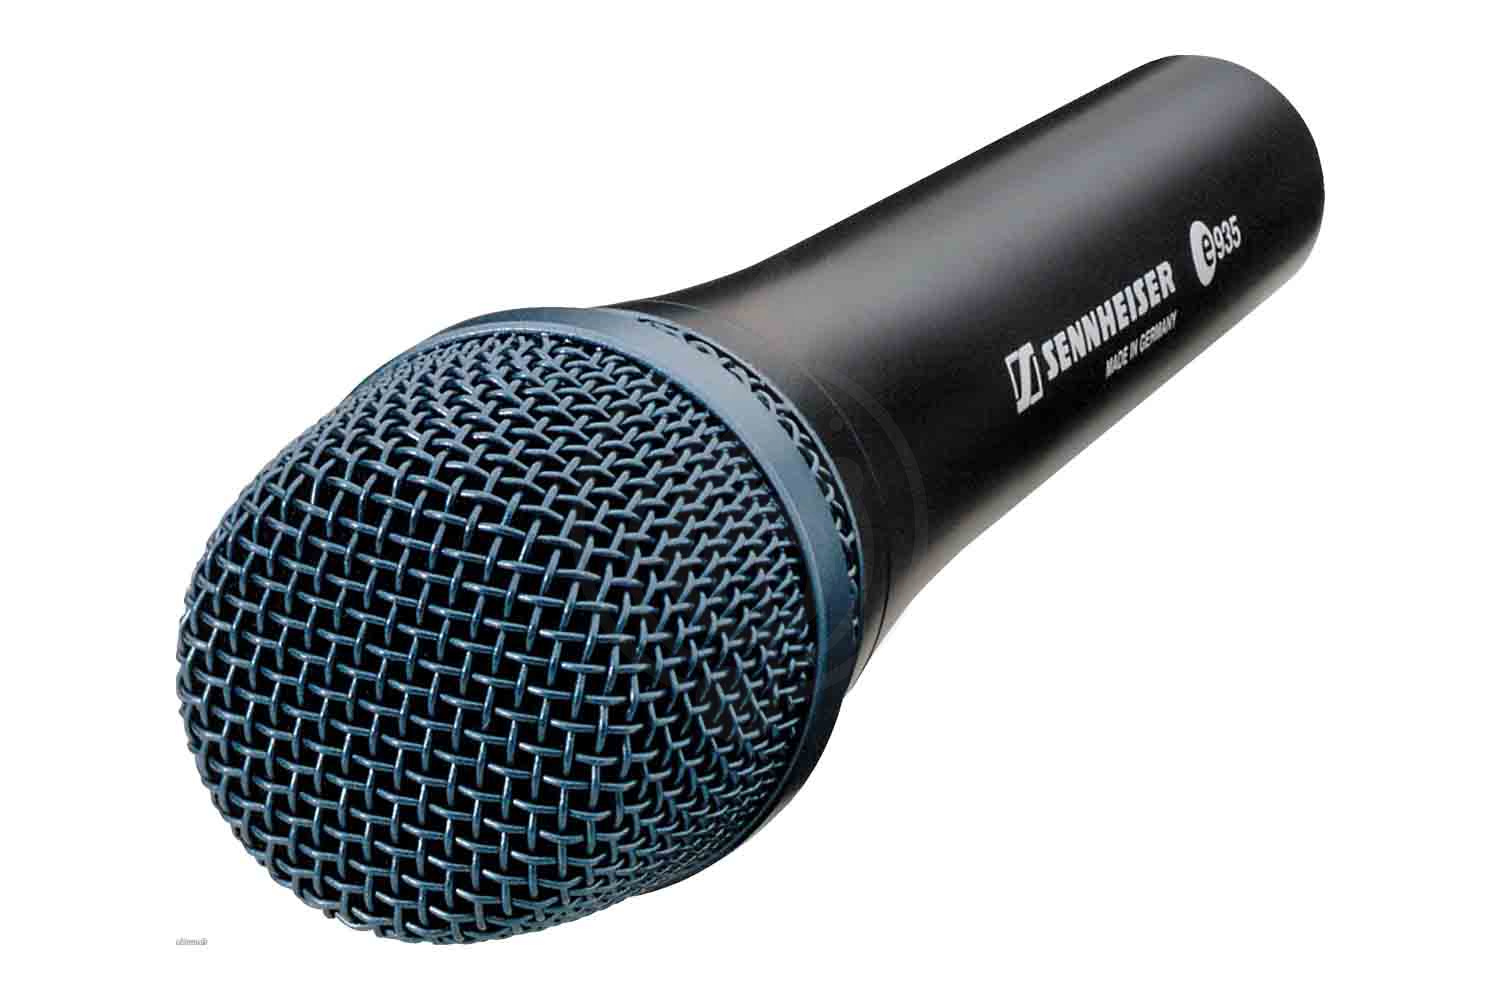 Динамический вокальный микрофон Динамические вокальные микрофоны Sennheiser Sennheiser E 935  Микрофон динамический вокальный E 935 - фото 2